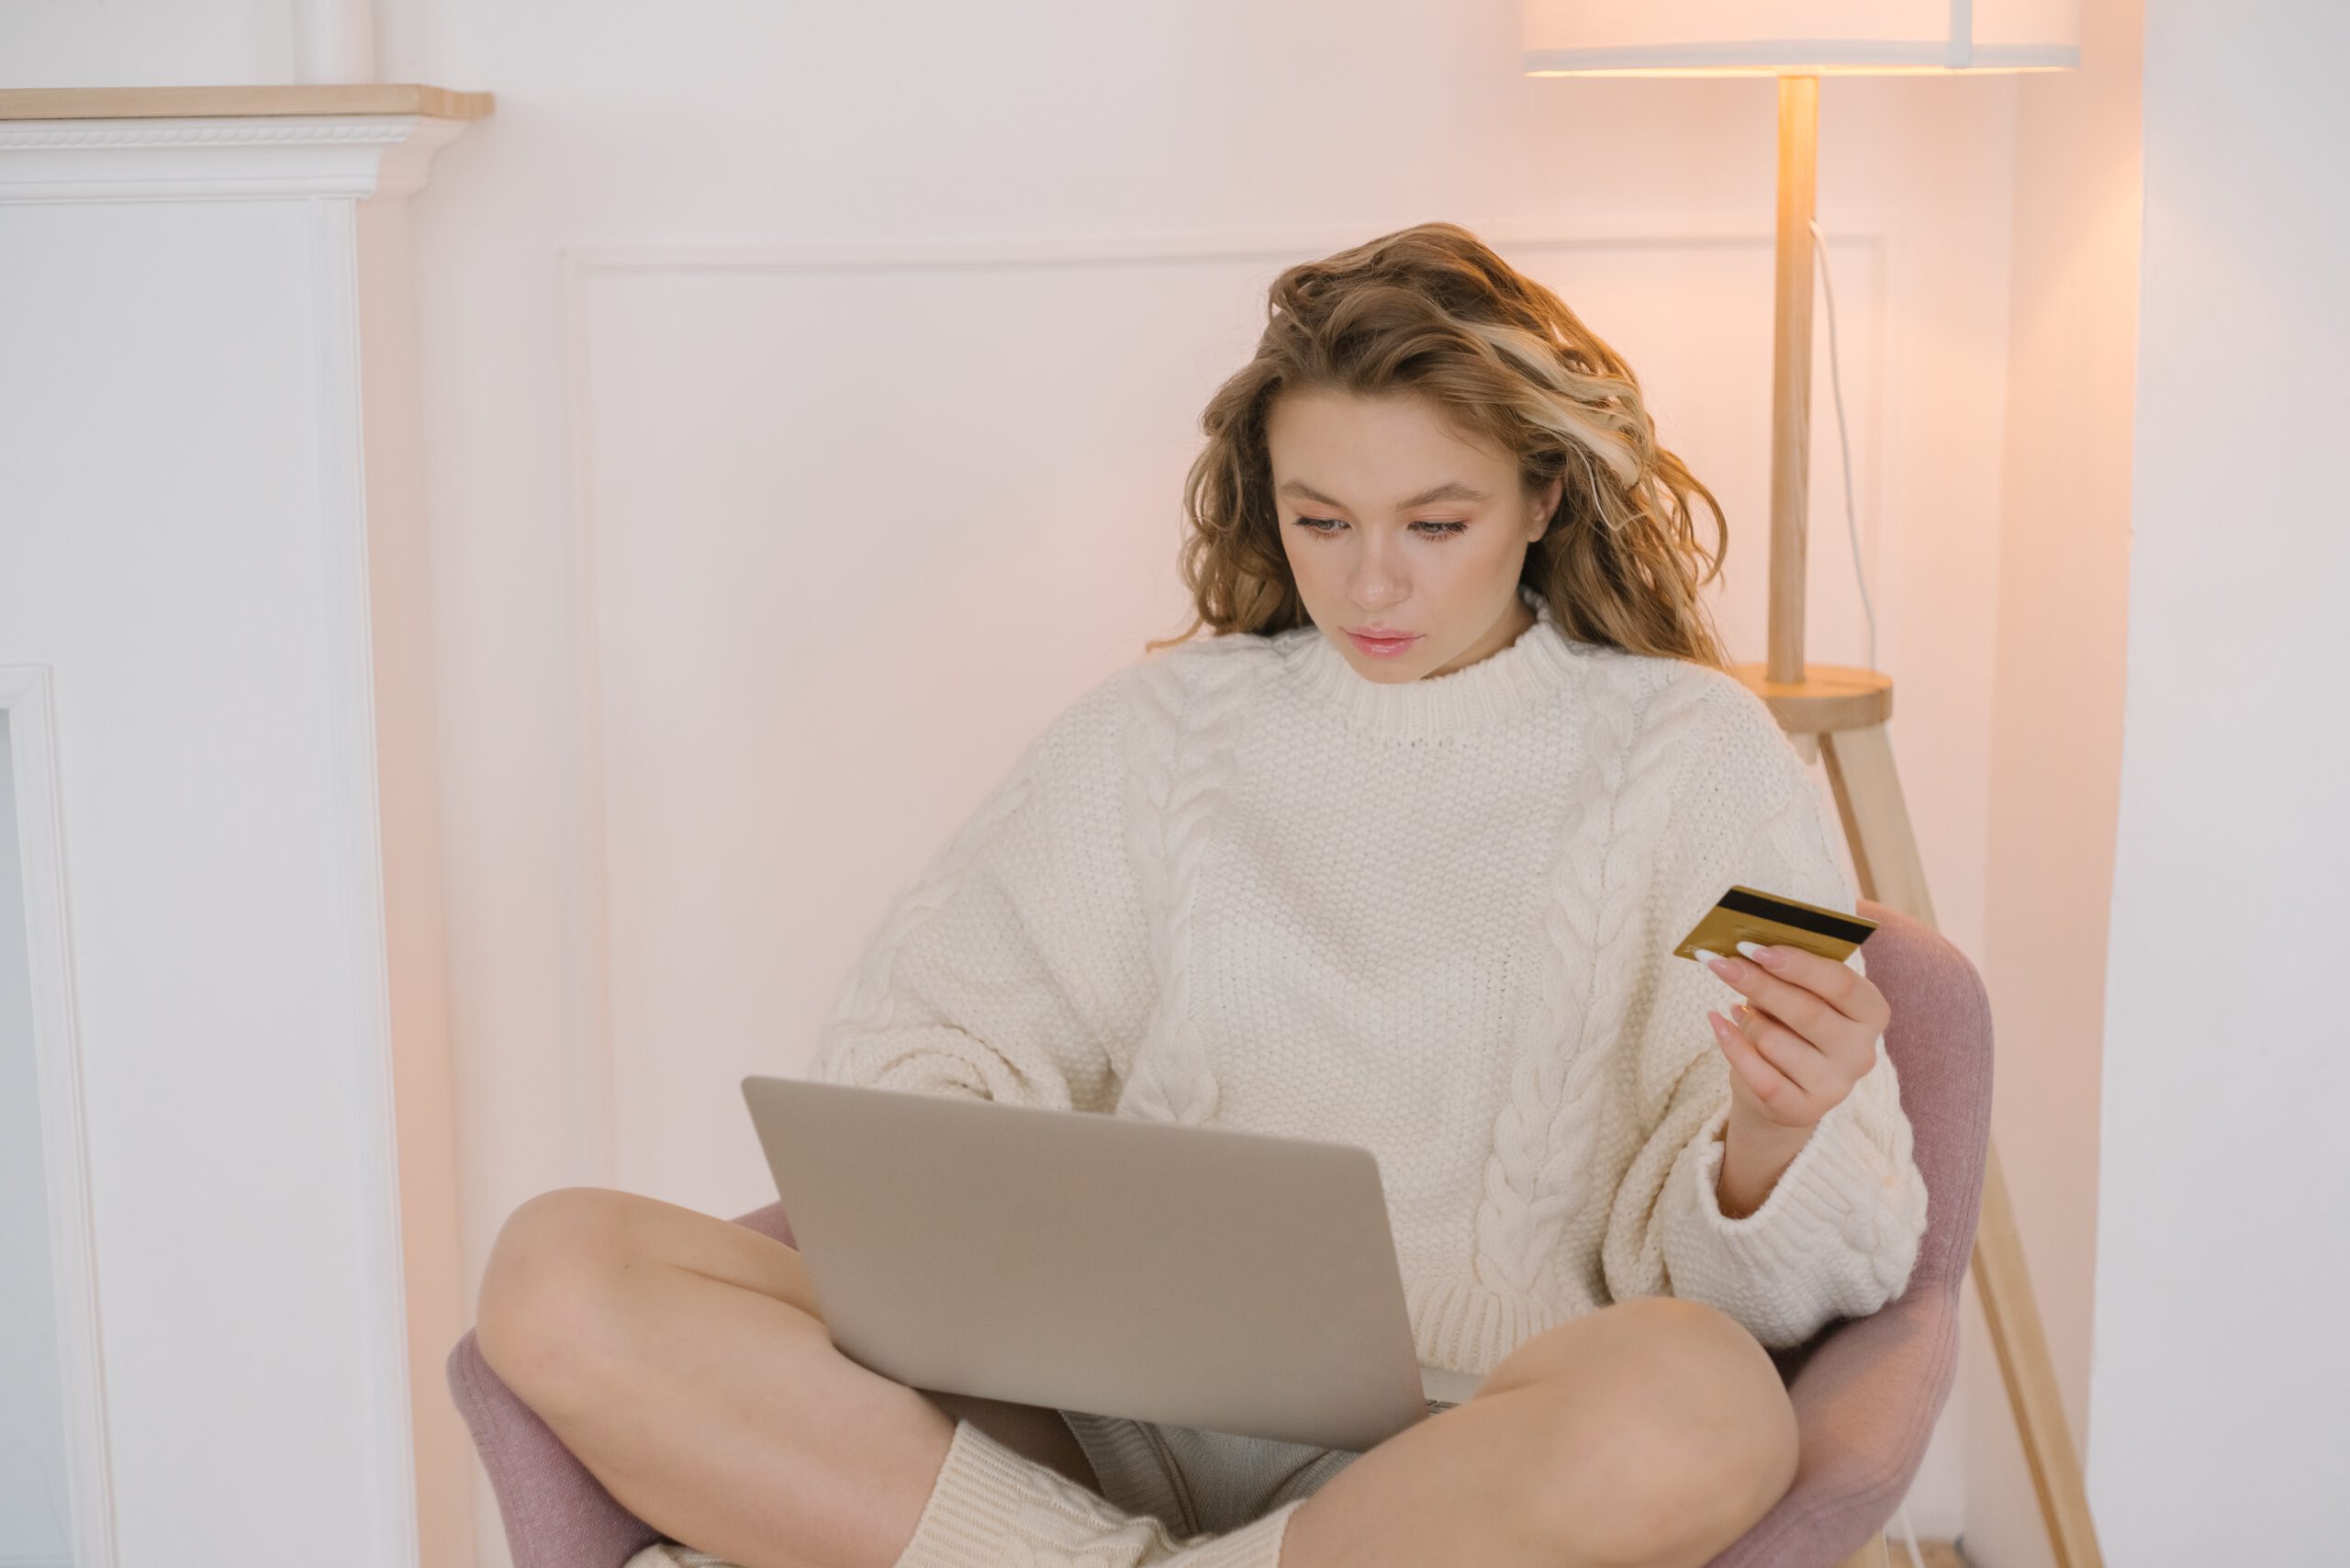 Kobieta siedząca na fotelu z laptopem na kolanach i kartą kredytową w dłoni